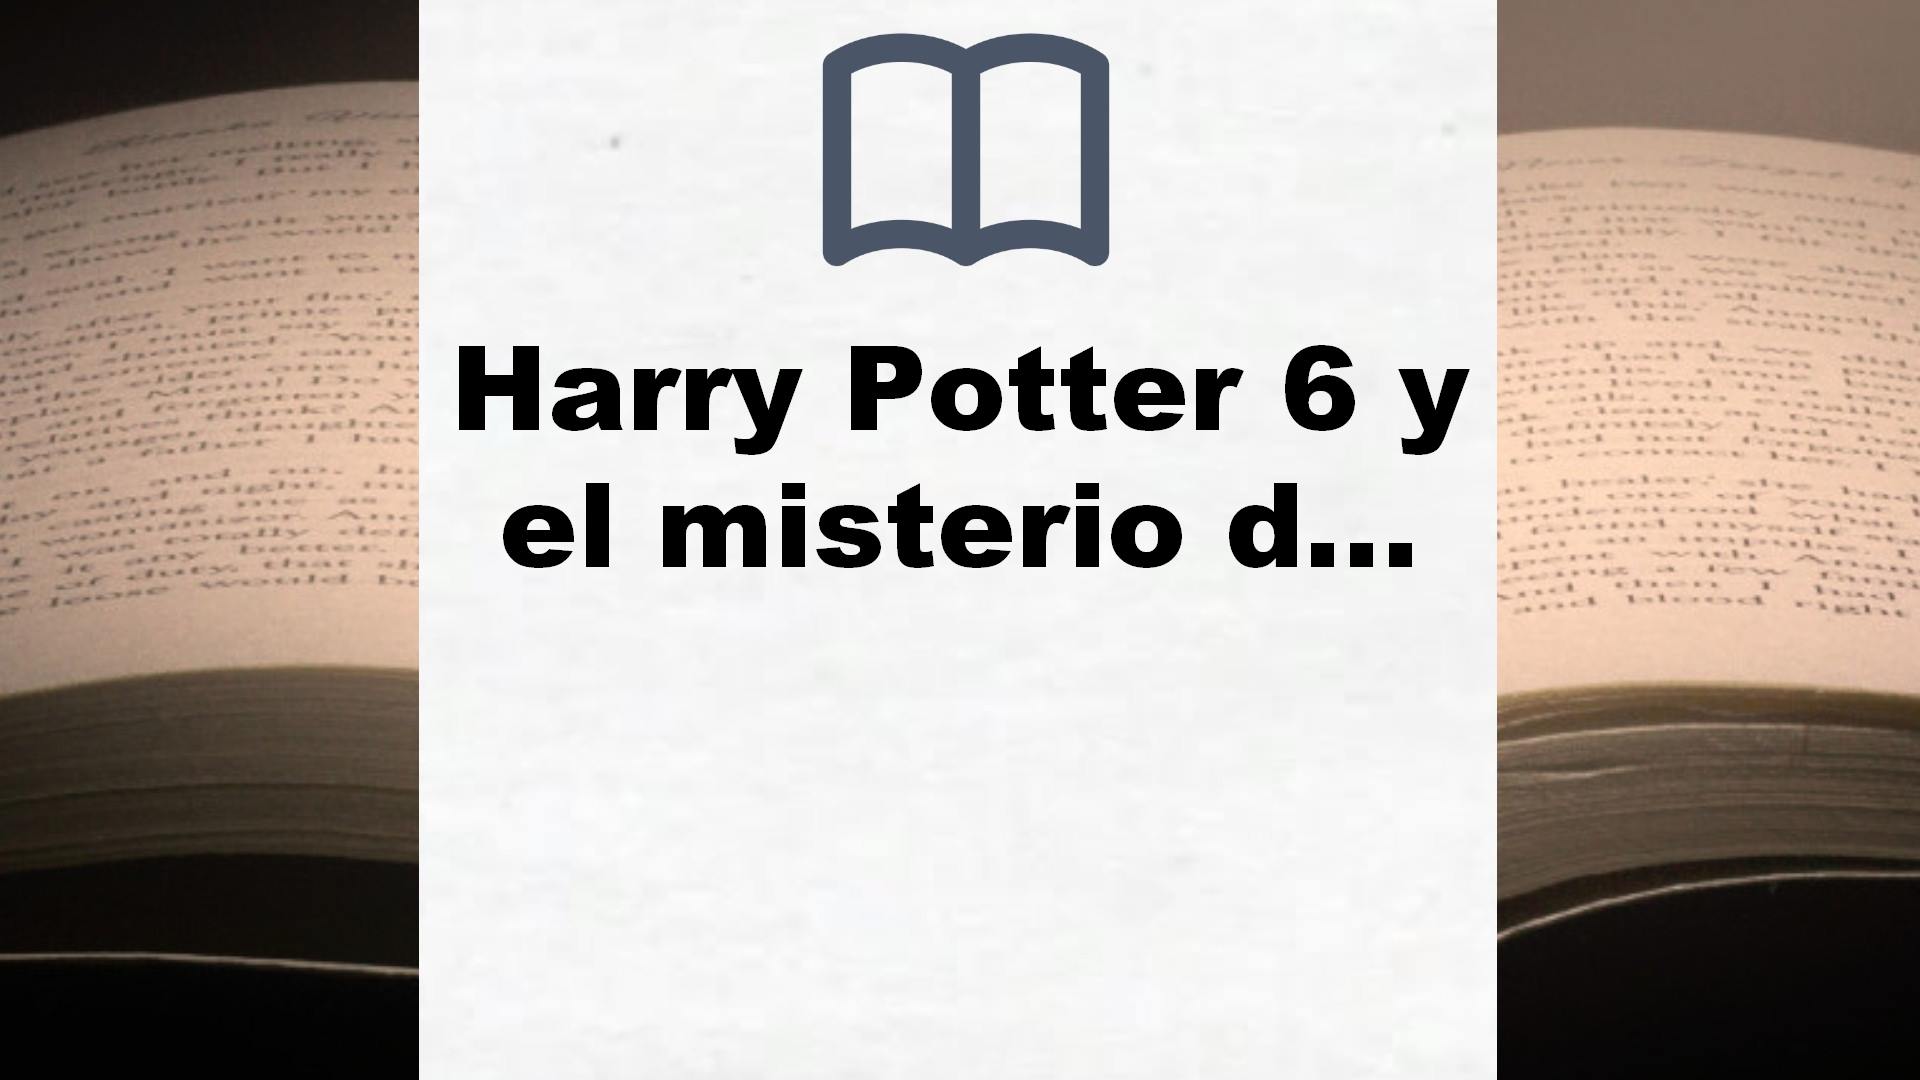 Harry Potter 6 y el misterio del príncipe: Harry Potter y el misterio del principe – Reseña del libro